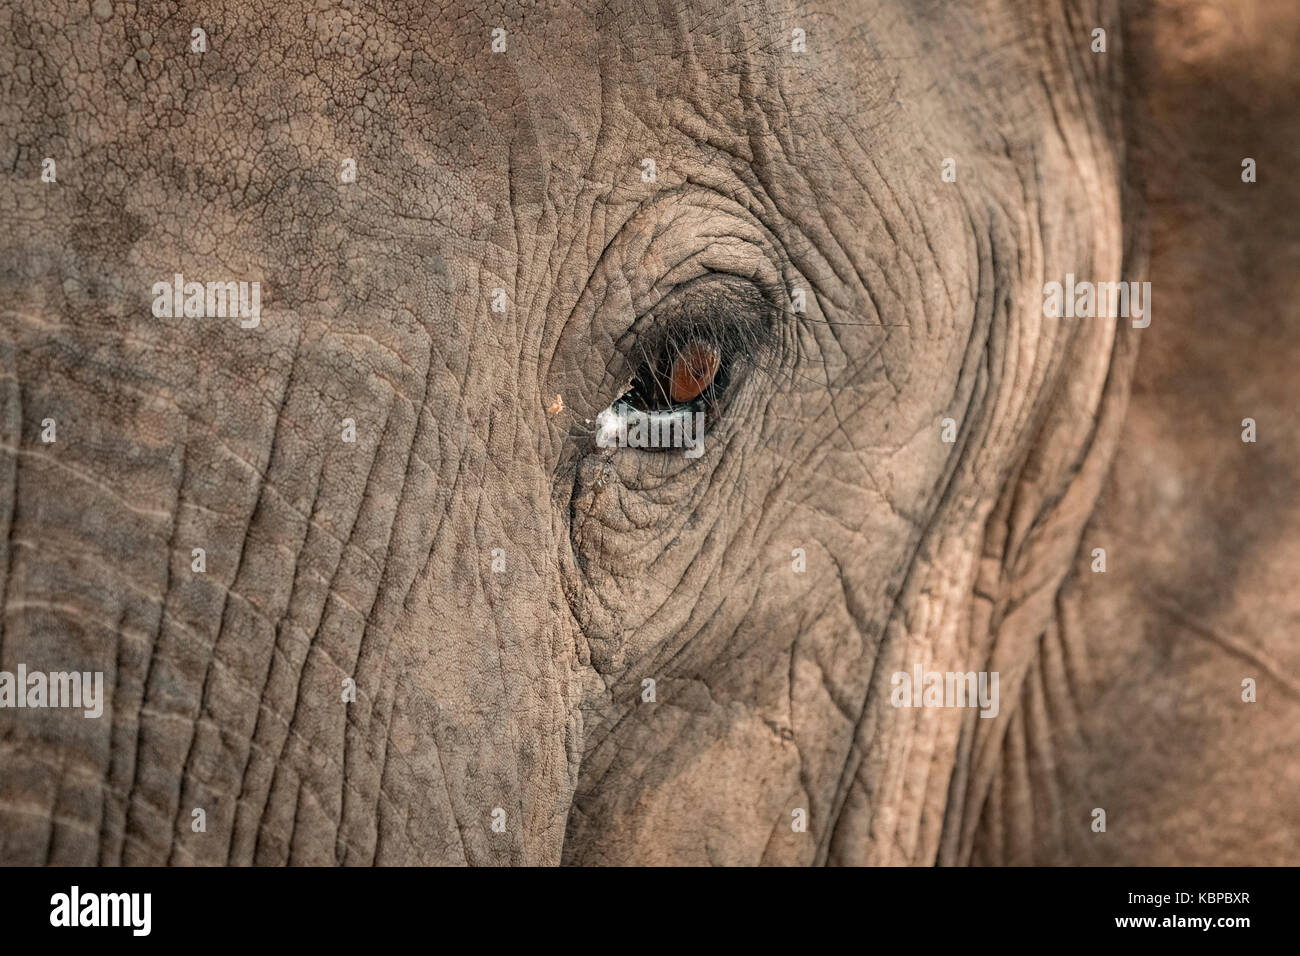 Close up of African elephant's eye (Loxodonta) Stock Photo